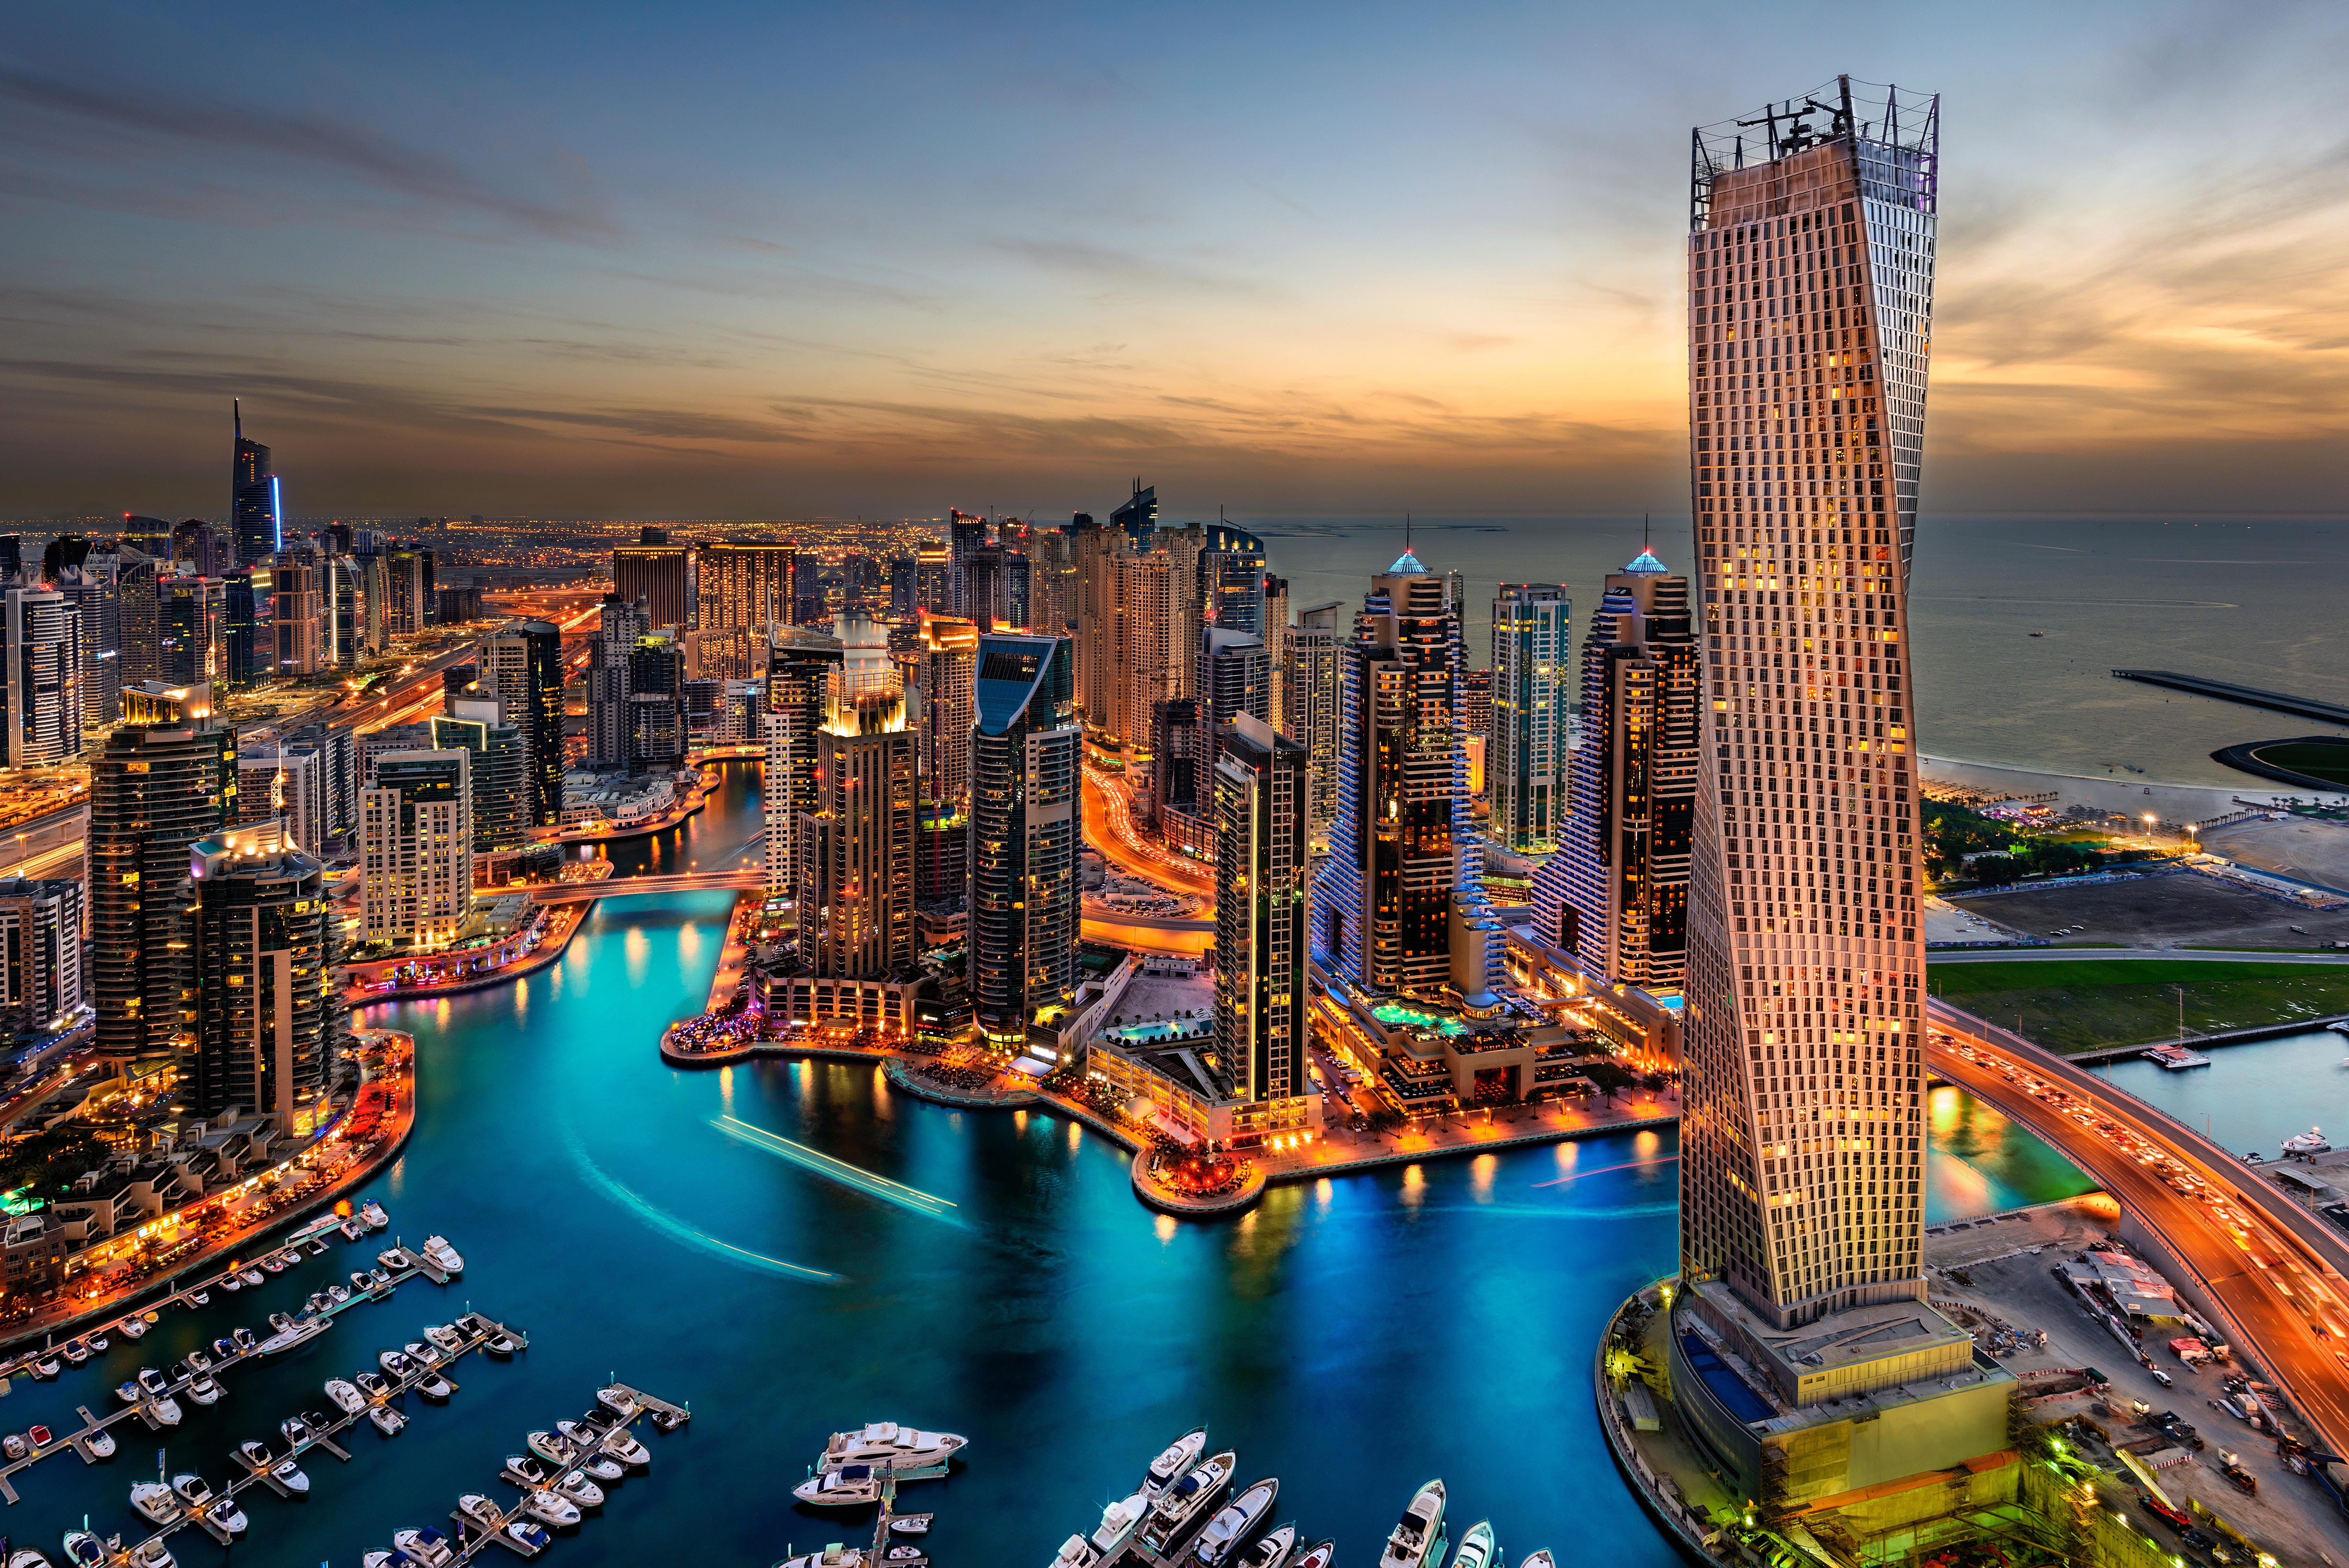 امارات، موفق ترین کشور غیرغربی است/اقتصاد برای ما تأمین ارزاق شده است، نه سهم داشتن از فناوری و تولید جهانی